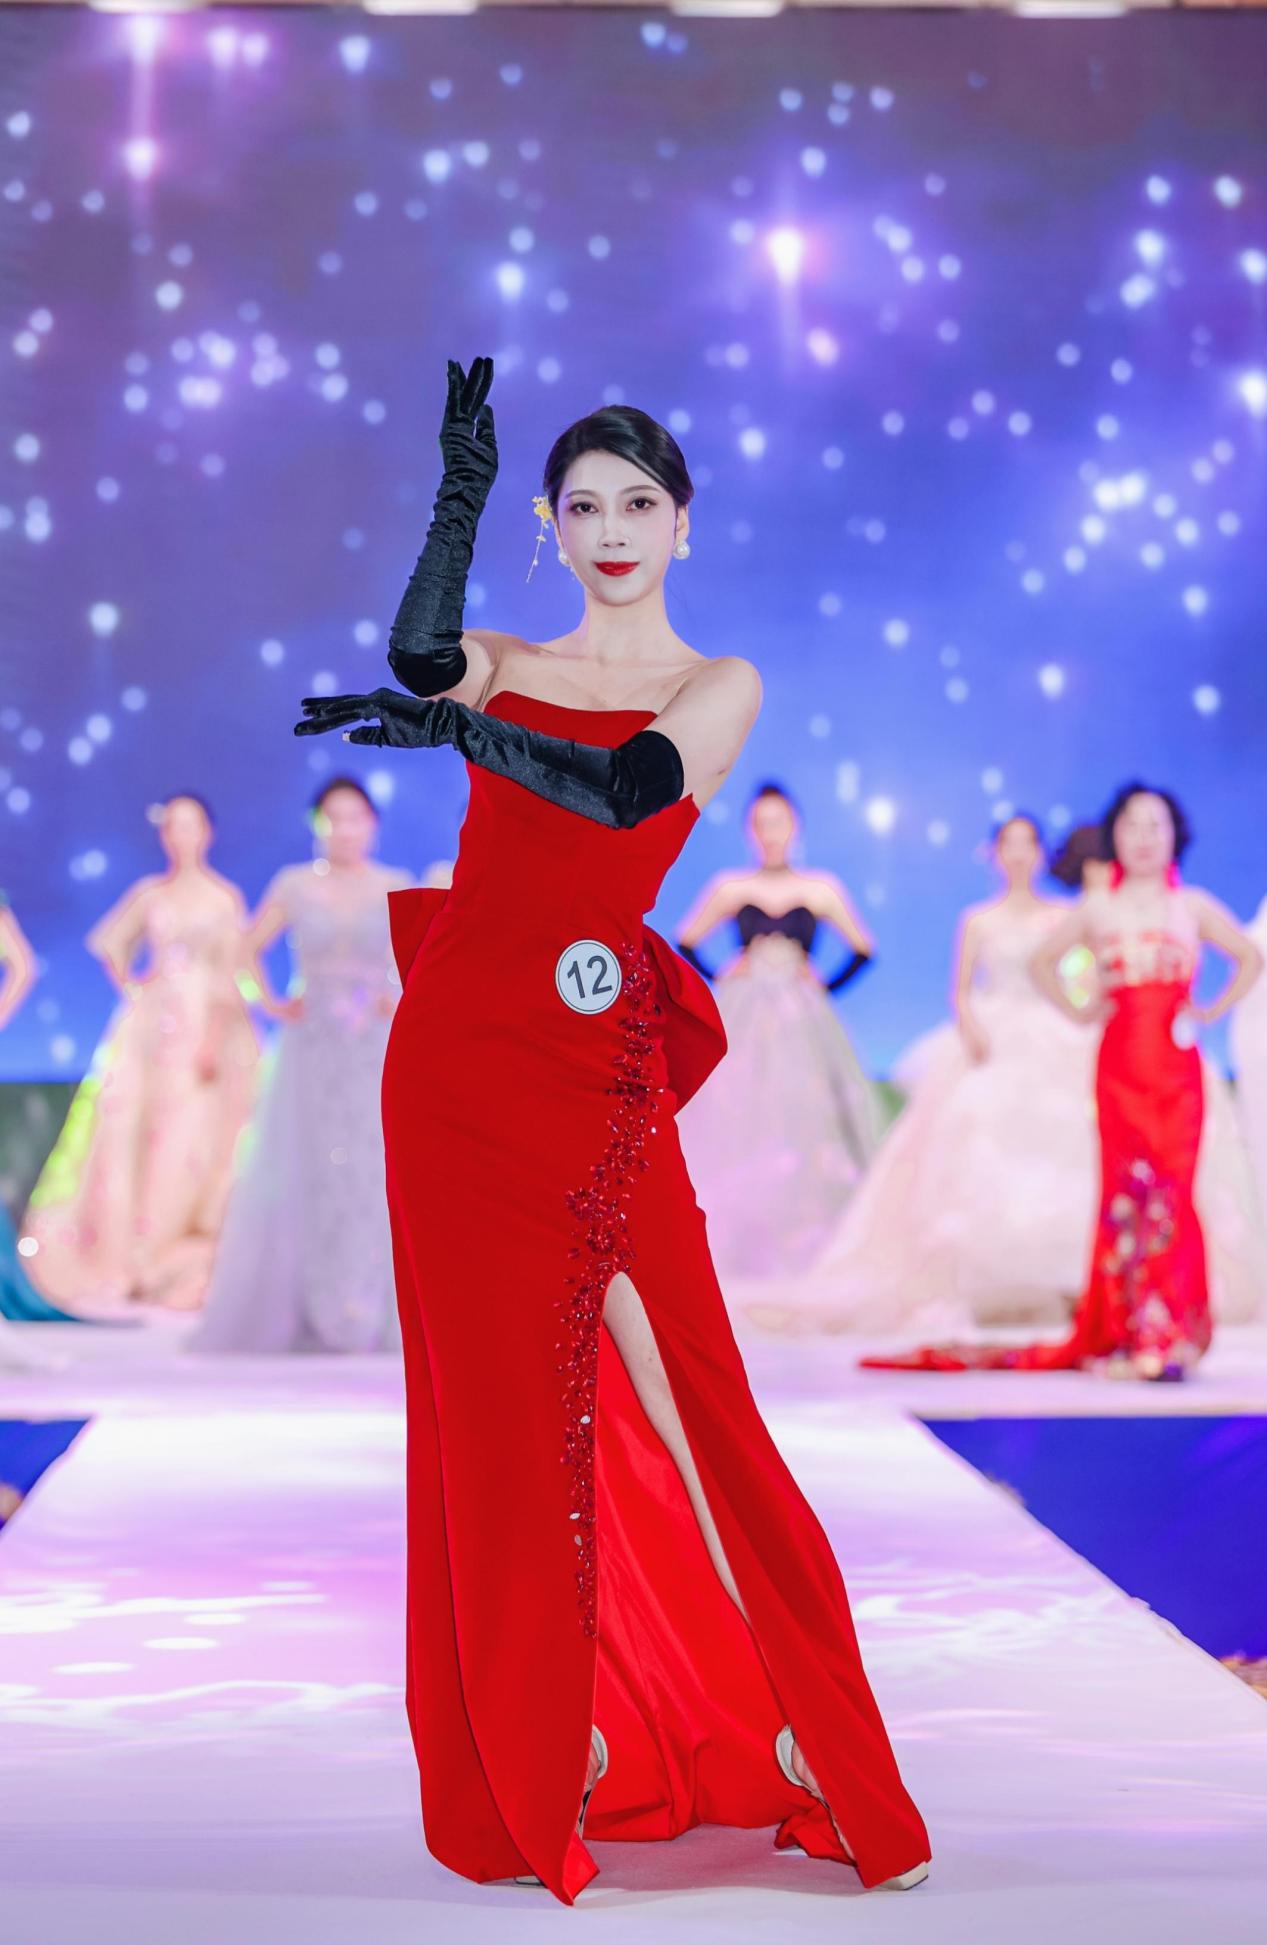  2021第25届MRS.GLOBE环球夫人大赛桂林赛区总决赛巅峰之宴，